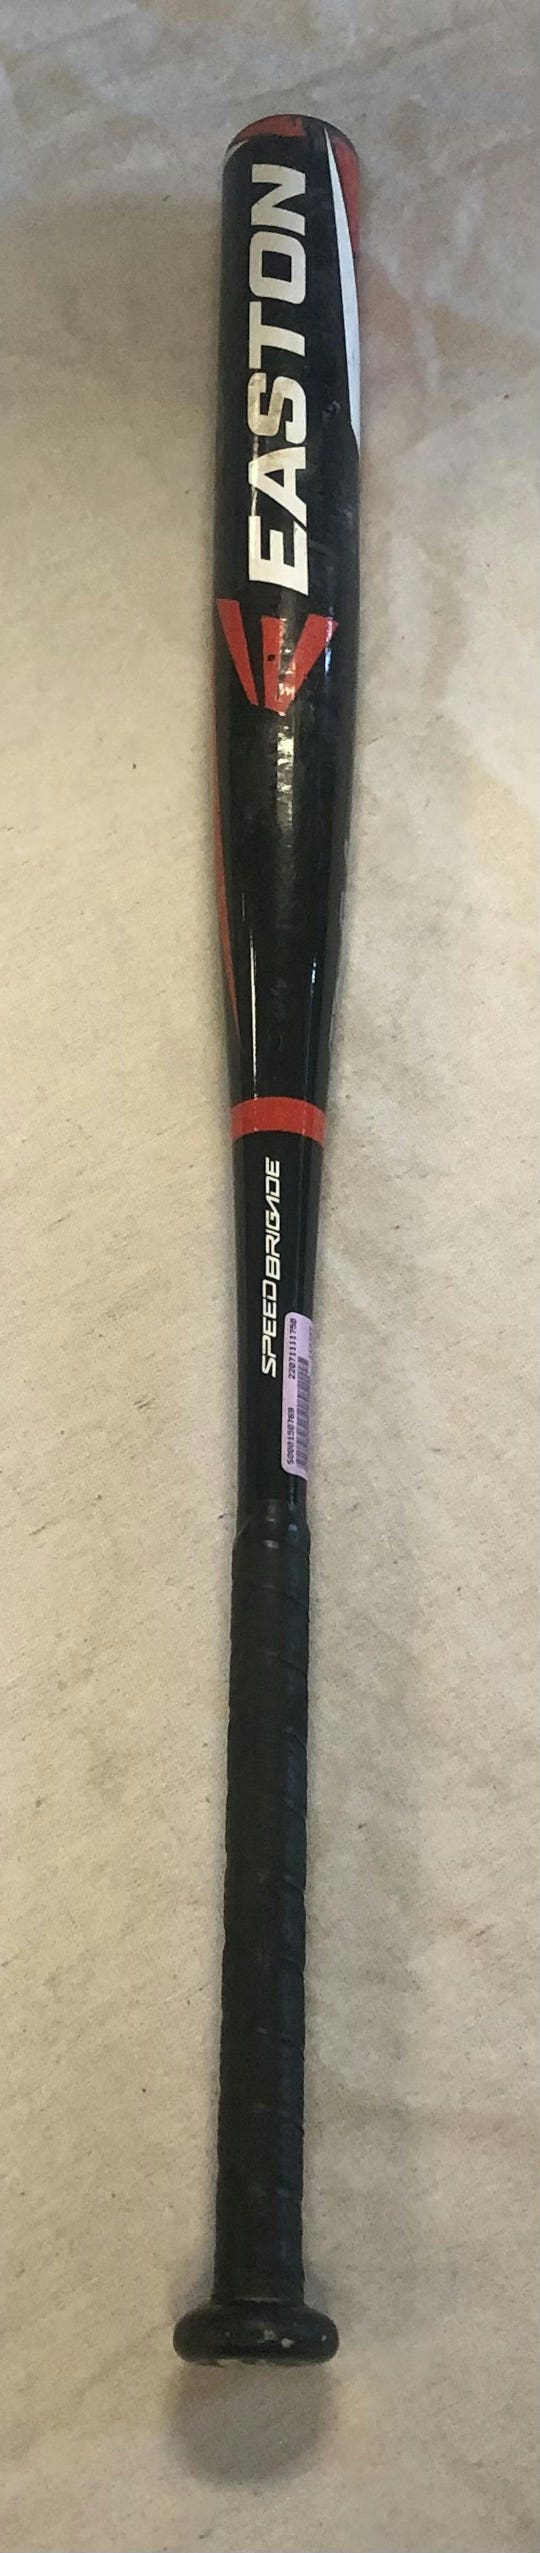 Used Easton S50 34" -4 Drop Slowpitch Bats